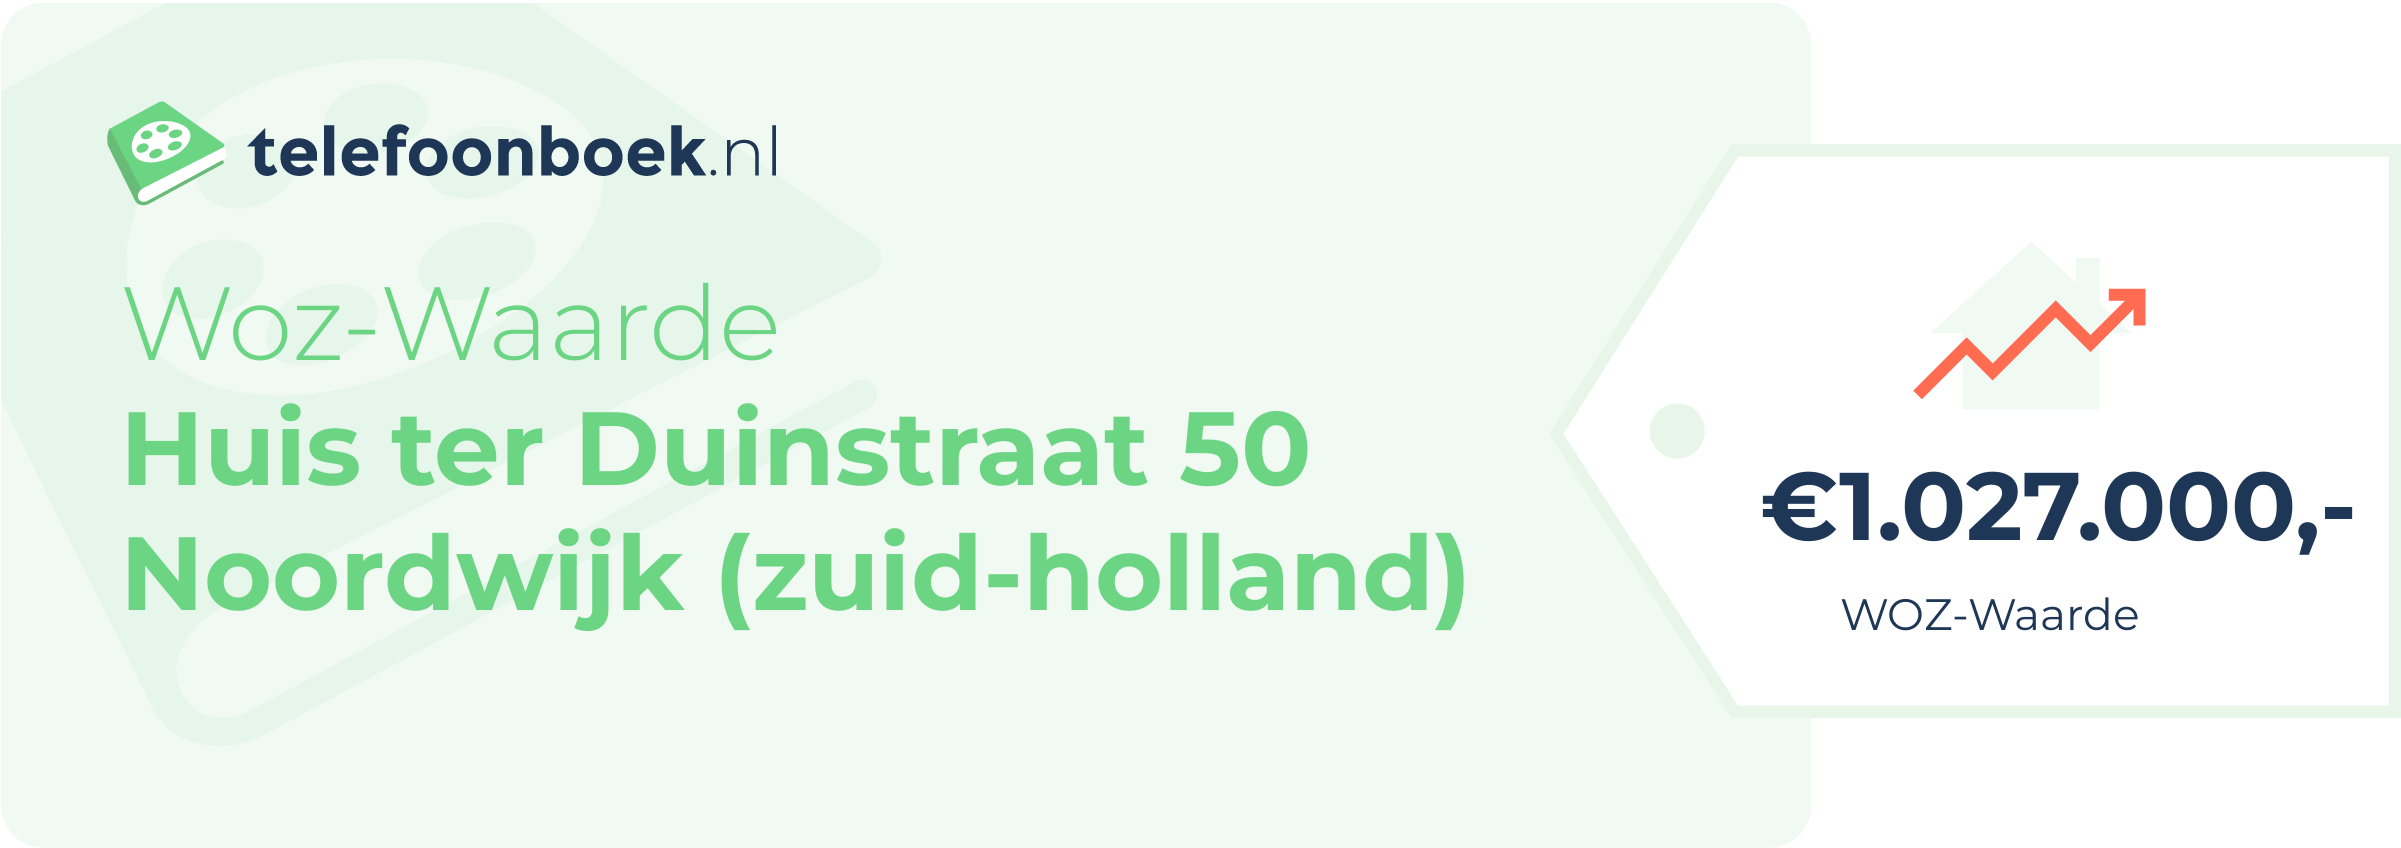 WOZ-waarde Huis Ter Duinstraat 50 Noordwijk (Zuid-Holland)